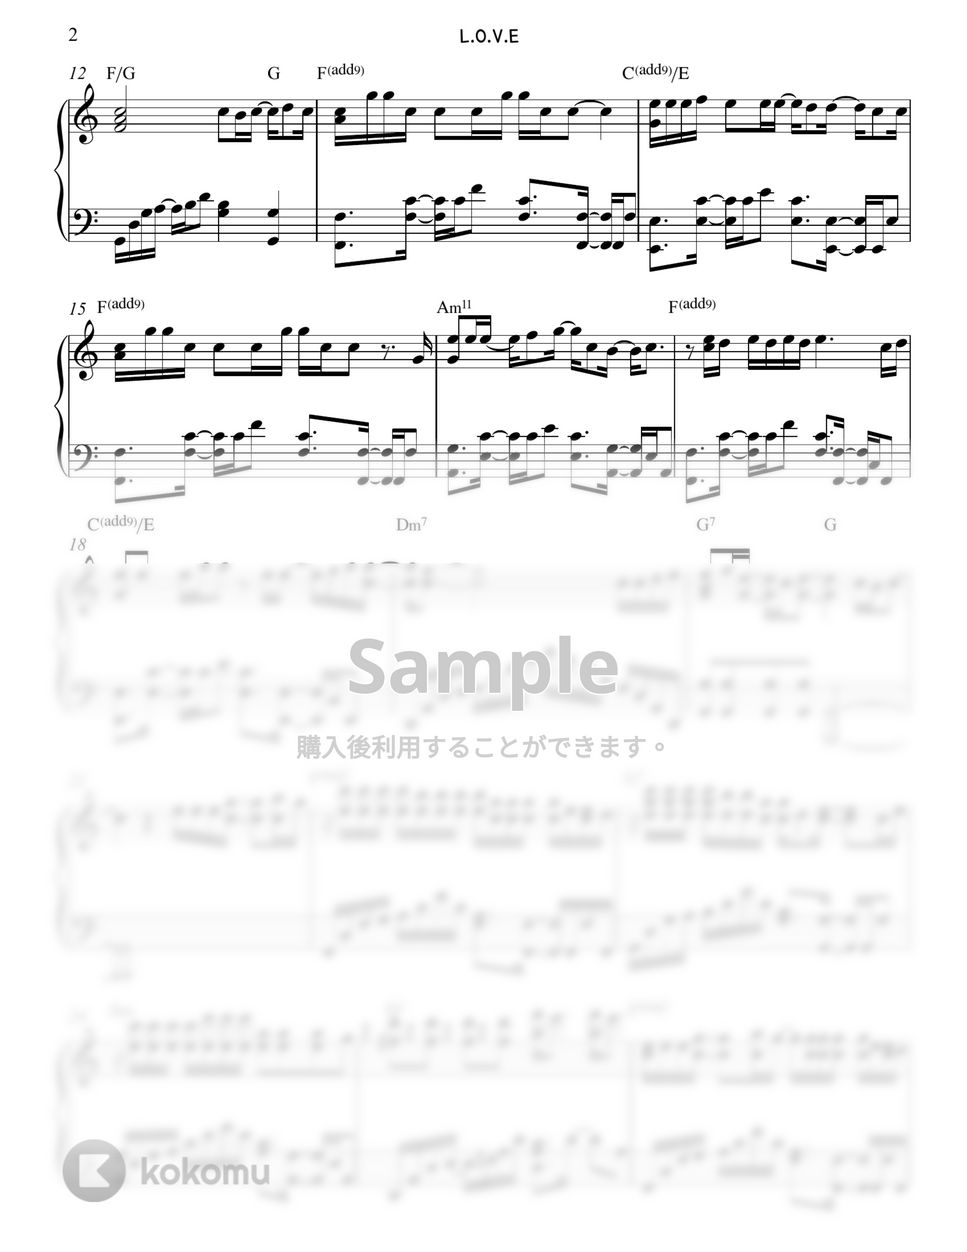 박지훈 (PARK JIHOON) - L.O.V.E (Easy Transpose key) by Gloria L.